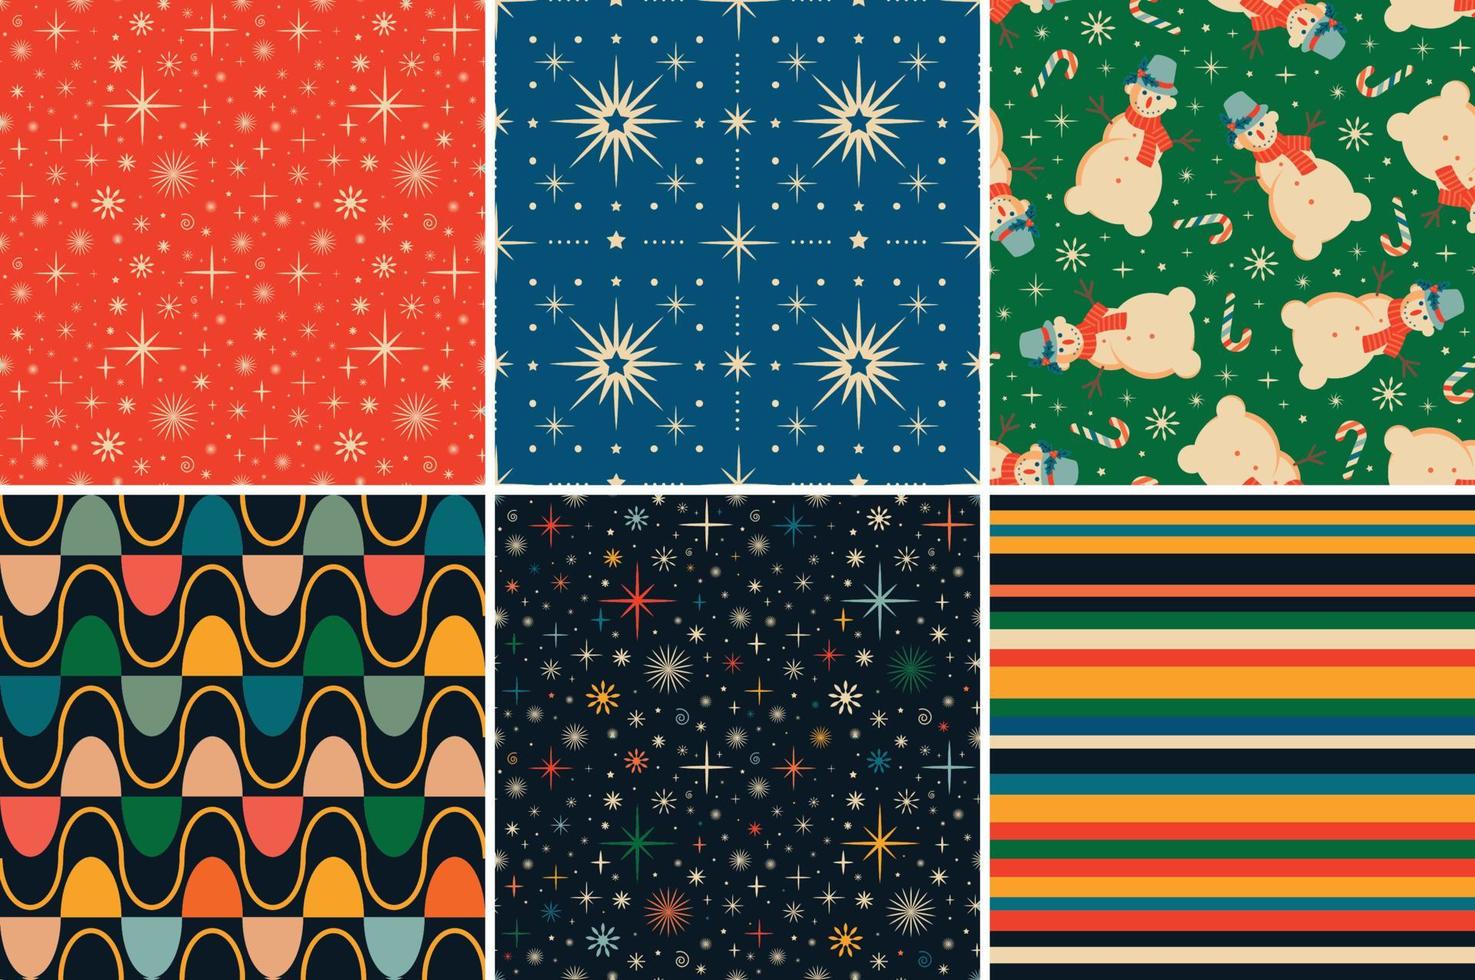 patrones sin fisuras de Navidad retro vintage al estilo de los años 60 y 70 vector